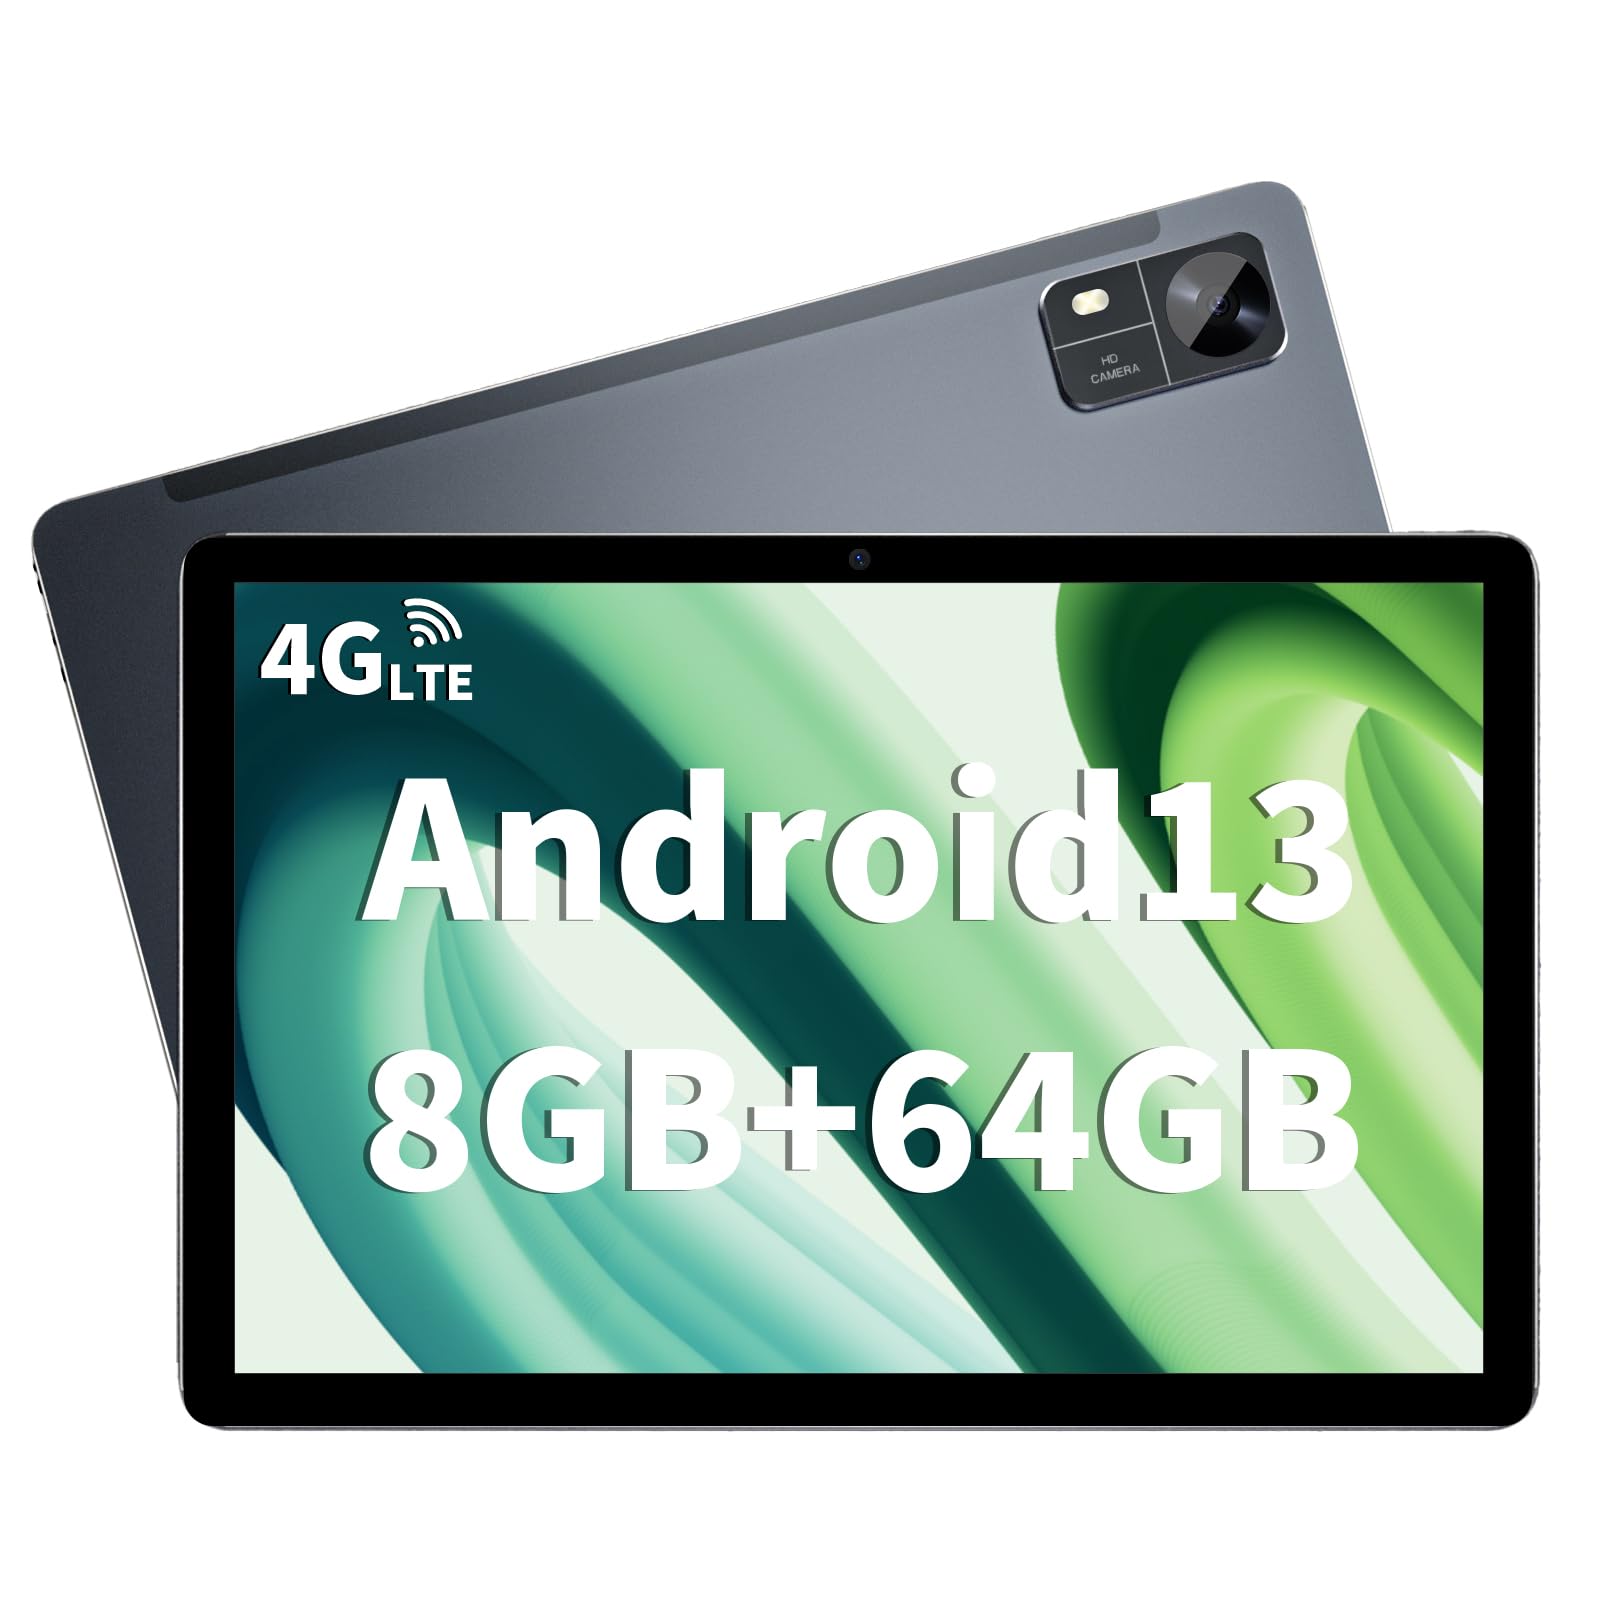 [初登場 Android 13 タブレット10インチ] タブレットC1型 8コアCPU T606+8GB(4+4)+64GB 1280*800 IPS画面 6000mAh大容量バッテリ、アンドロイド タブレット simフリー 4G LTE+5G WiFi+